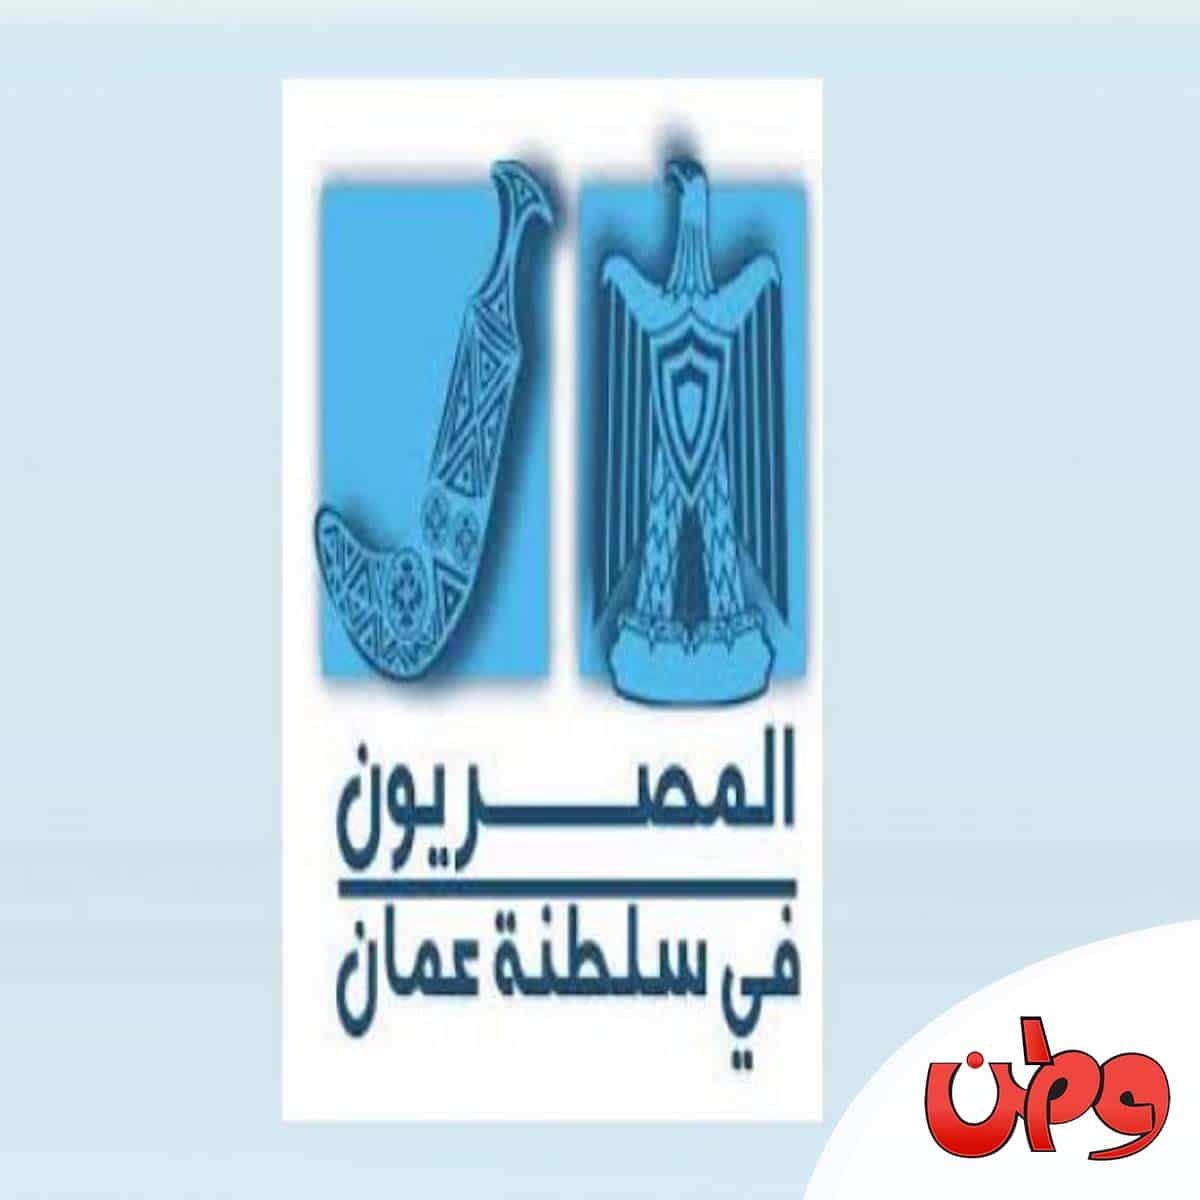 مقتل معلم مصري في سلطنة عمان watanserb.com